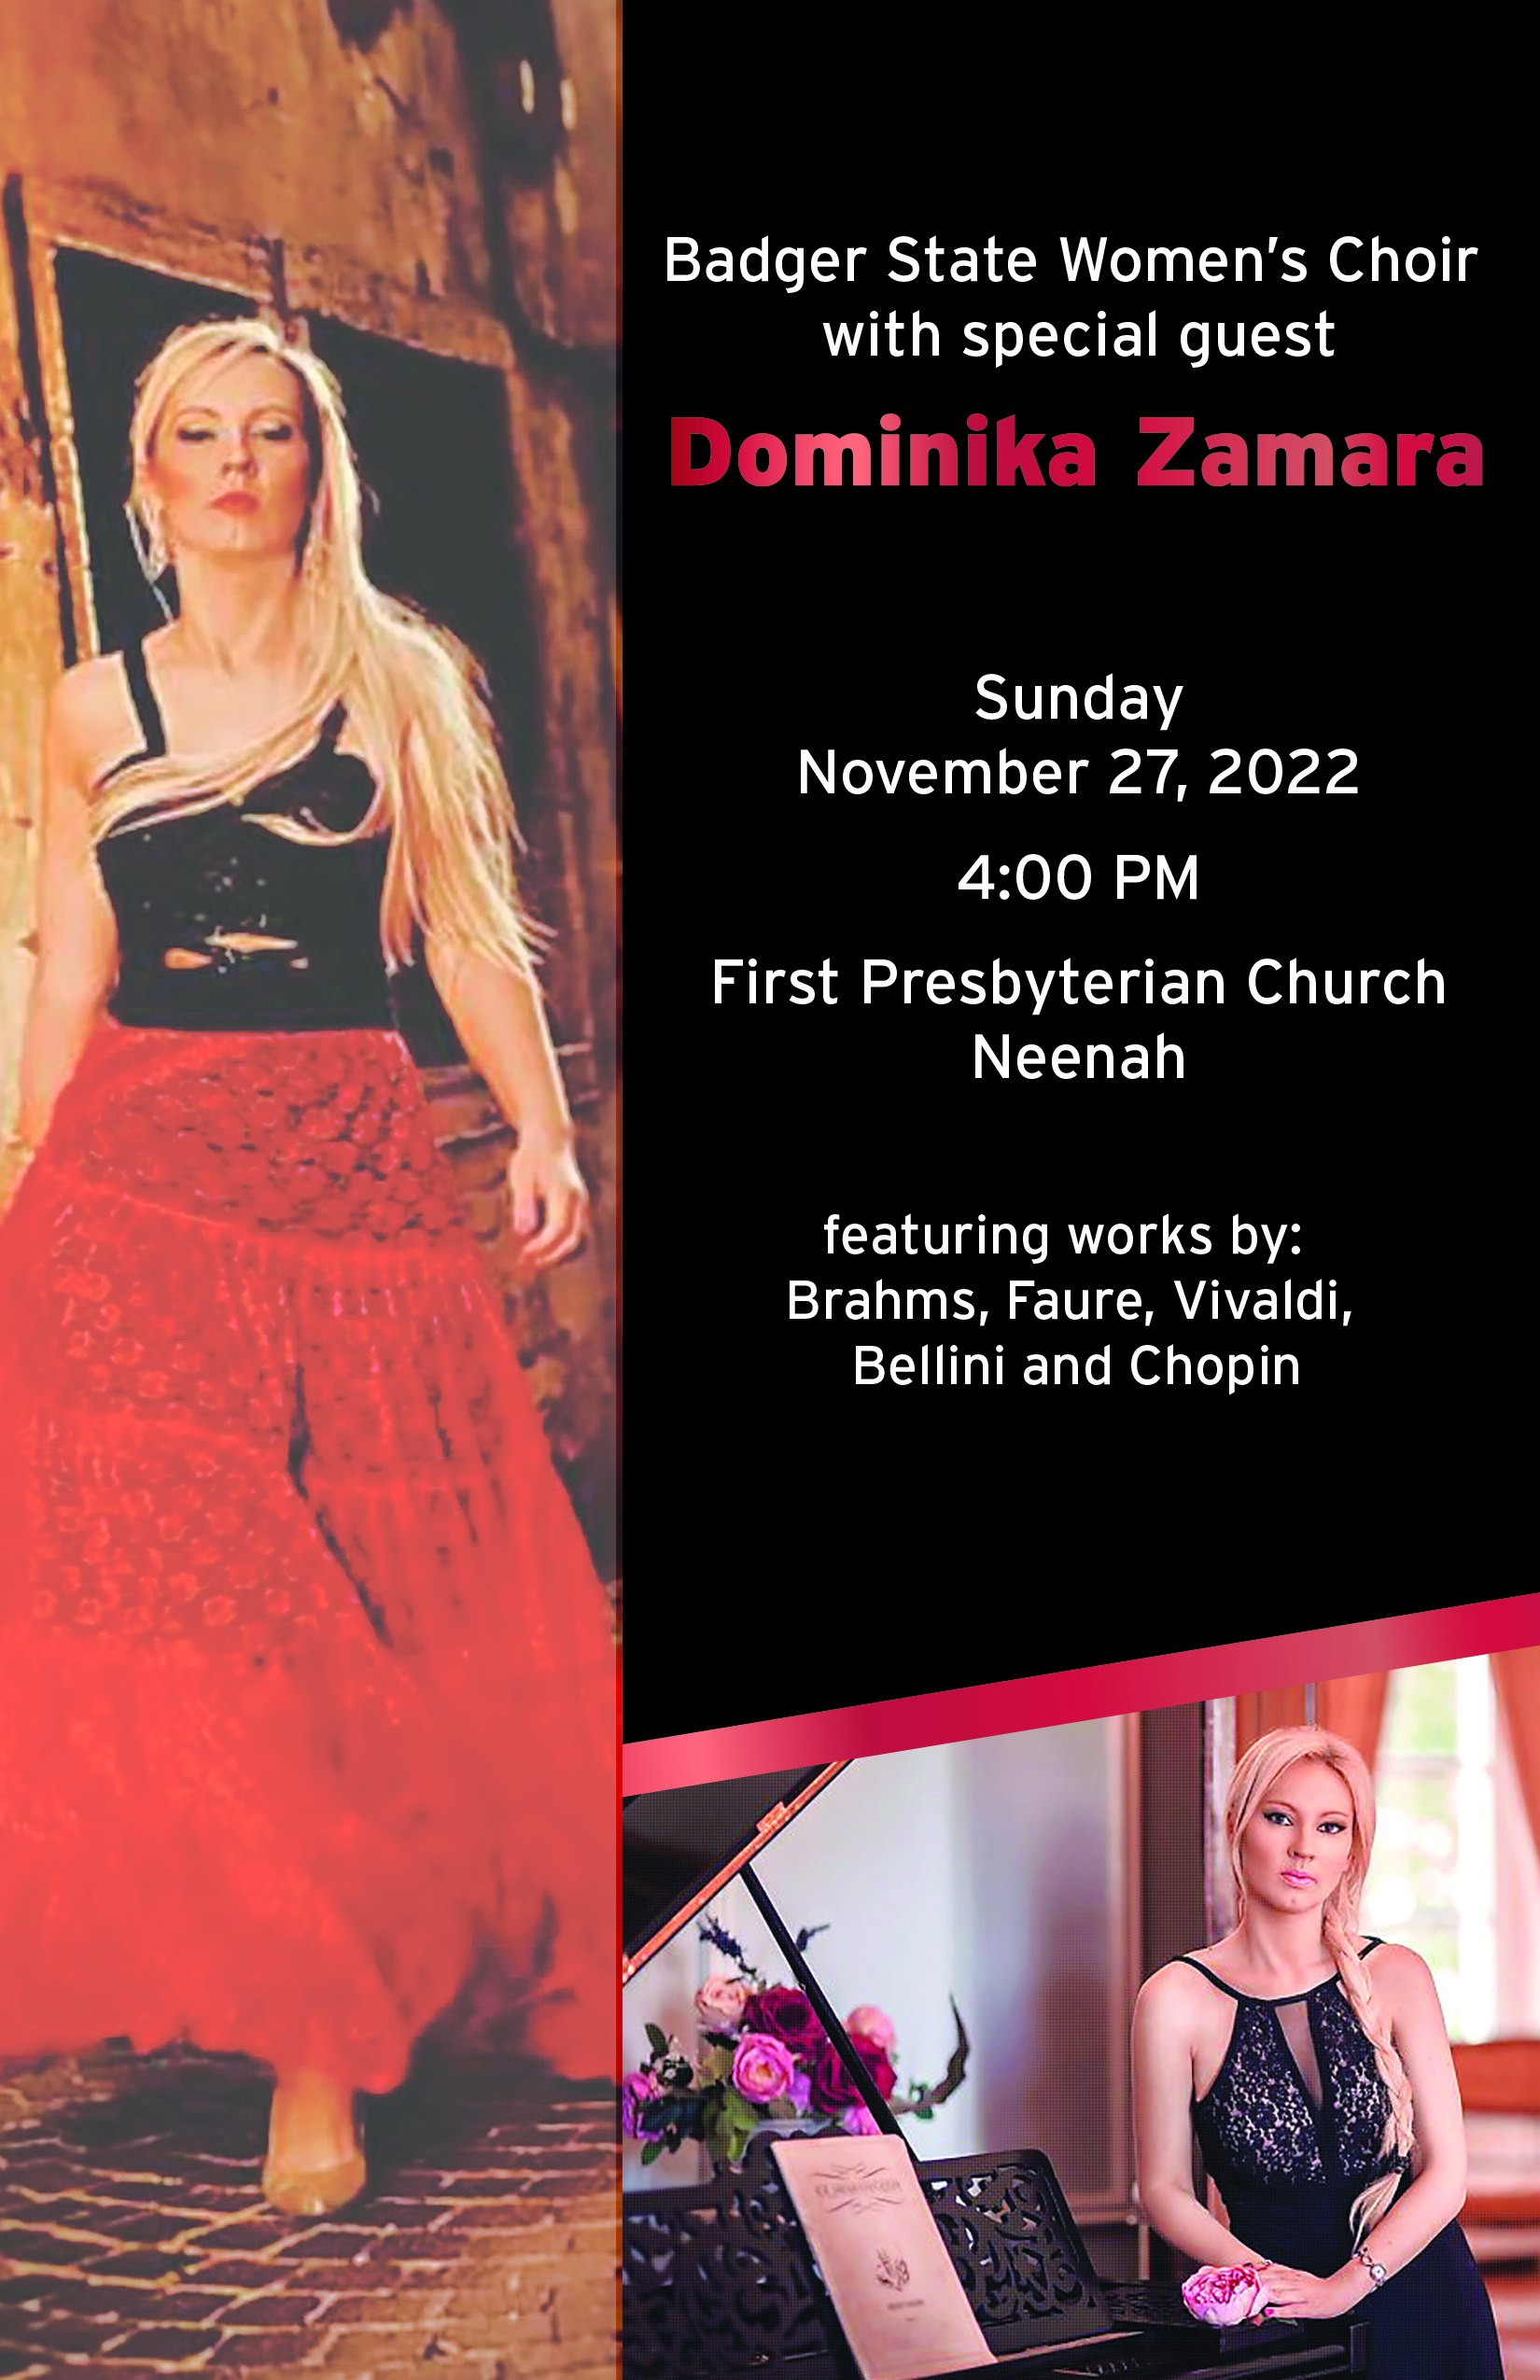 Il nuovo tour del soprano Dominika Zamara